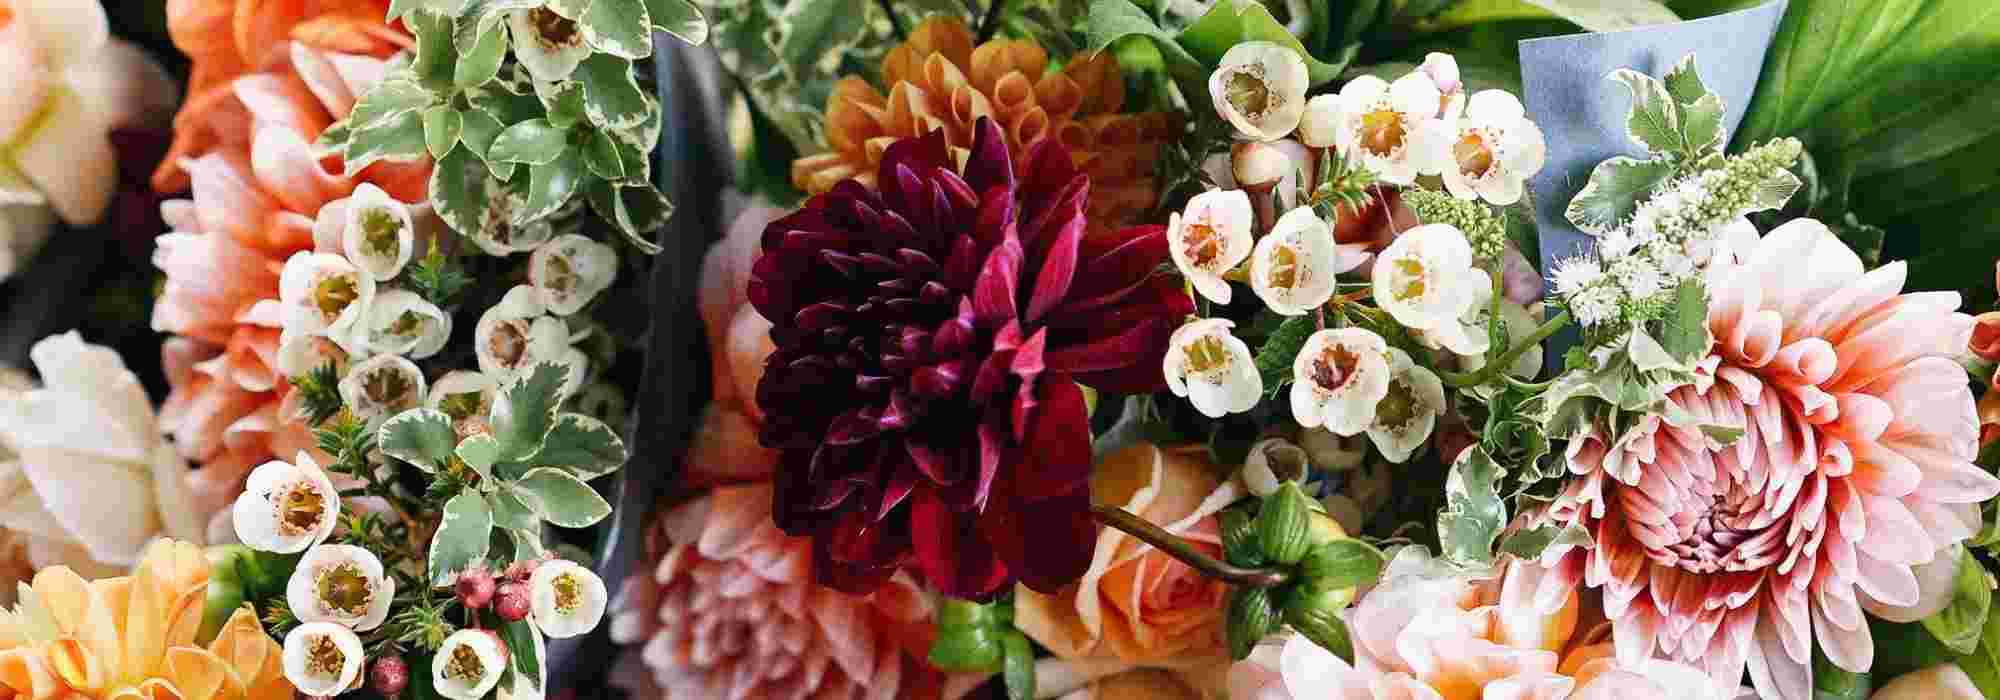 Vase et Pot Horticole de Terre Cuite en Fleurs : Décoration de Mariage !